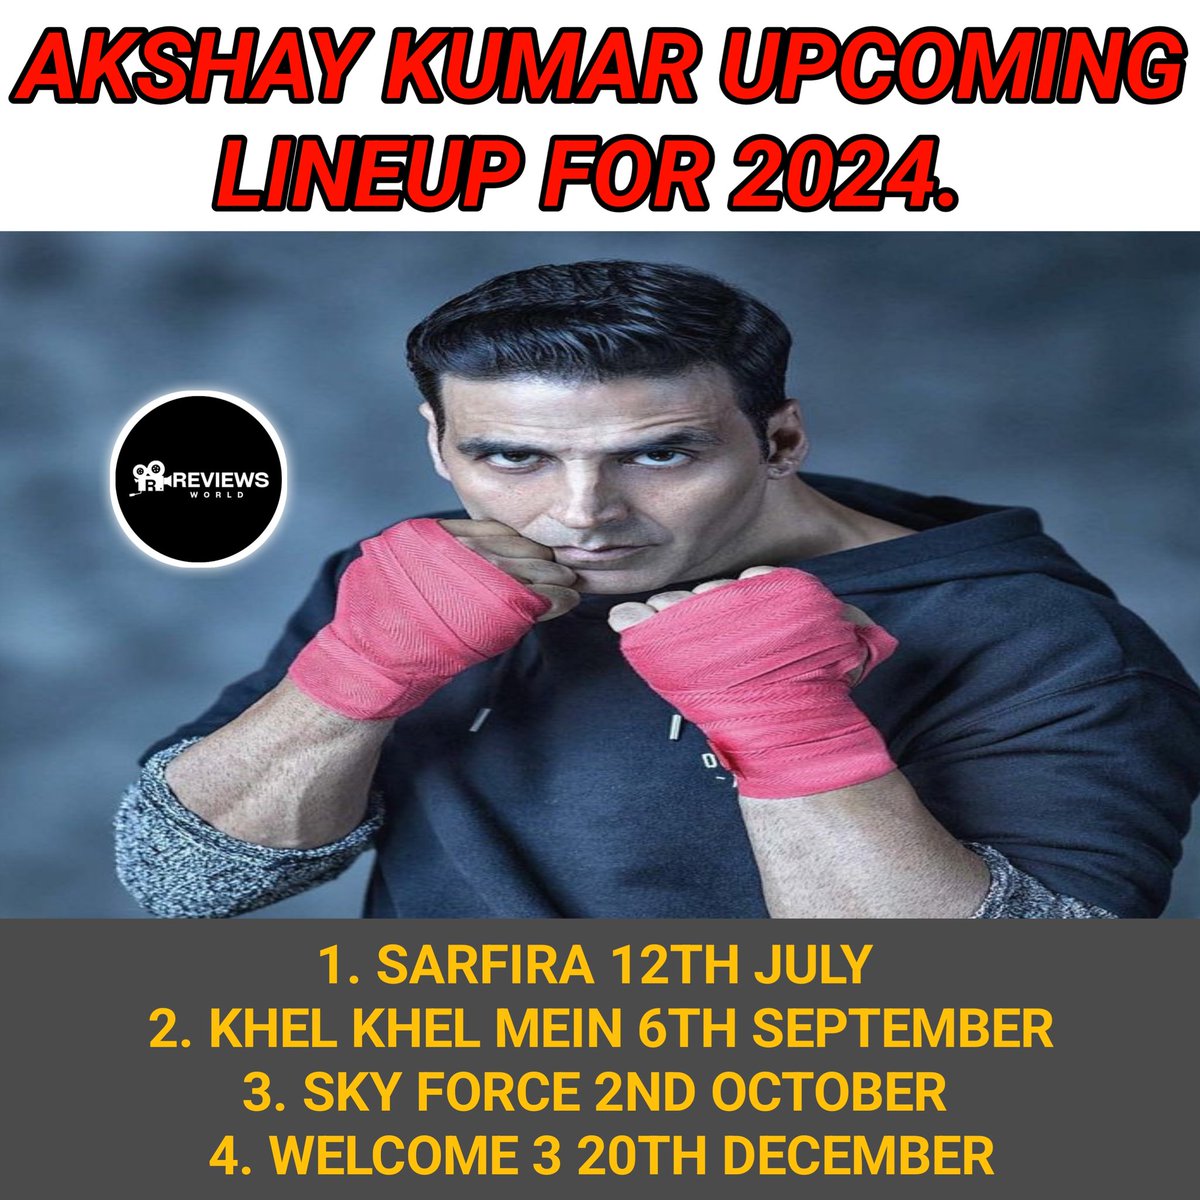 Akshay Kumar Upcoming Lineup For 2024 🥳 

#AkshayKumar #akshaykumarfans #khiladi #KhelKhelMein #Sarfira #SkyForce #welcome3 #movie
#Ramayana #Prabhas #Kalki2898AD #bollywood #Hindi #reviewsworld